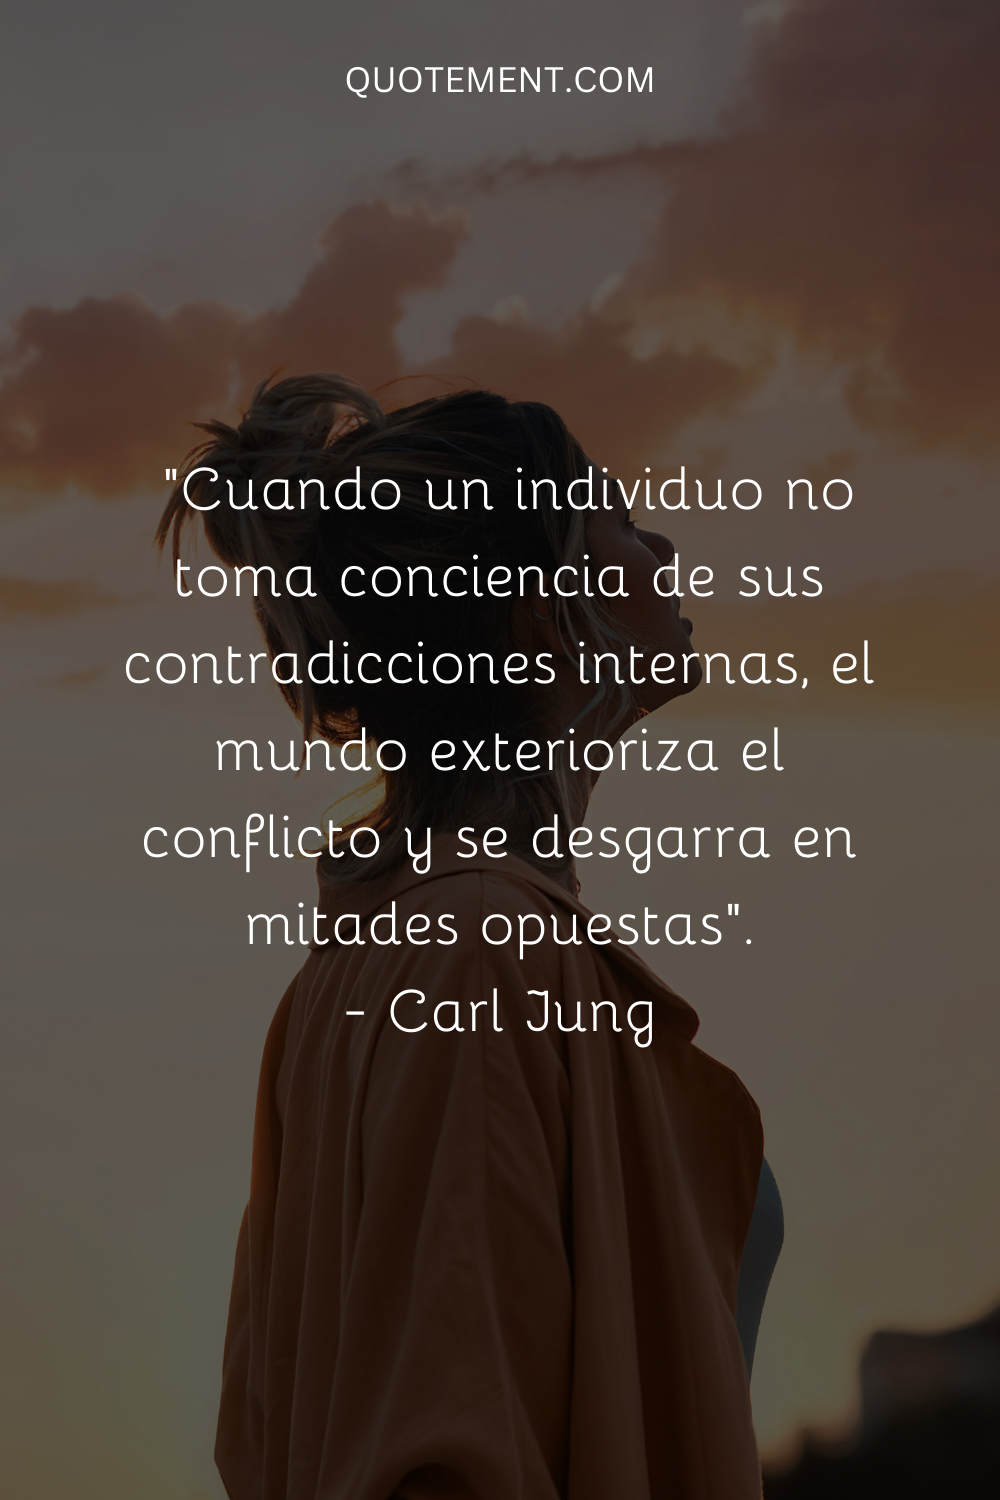 . "Cuando un individuo no toma conciencia de sus contradicciones internas, el mundo exterioriza el conflicto y se desgarra en mitades opuestas". - Carl Jung